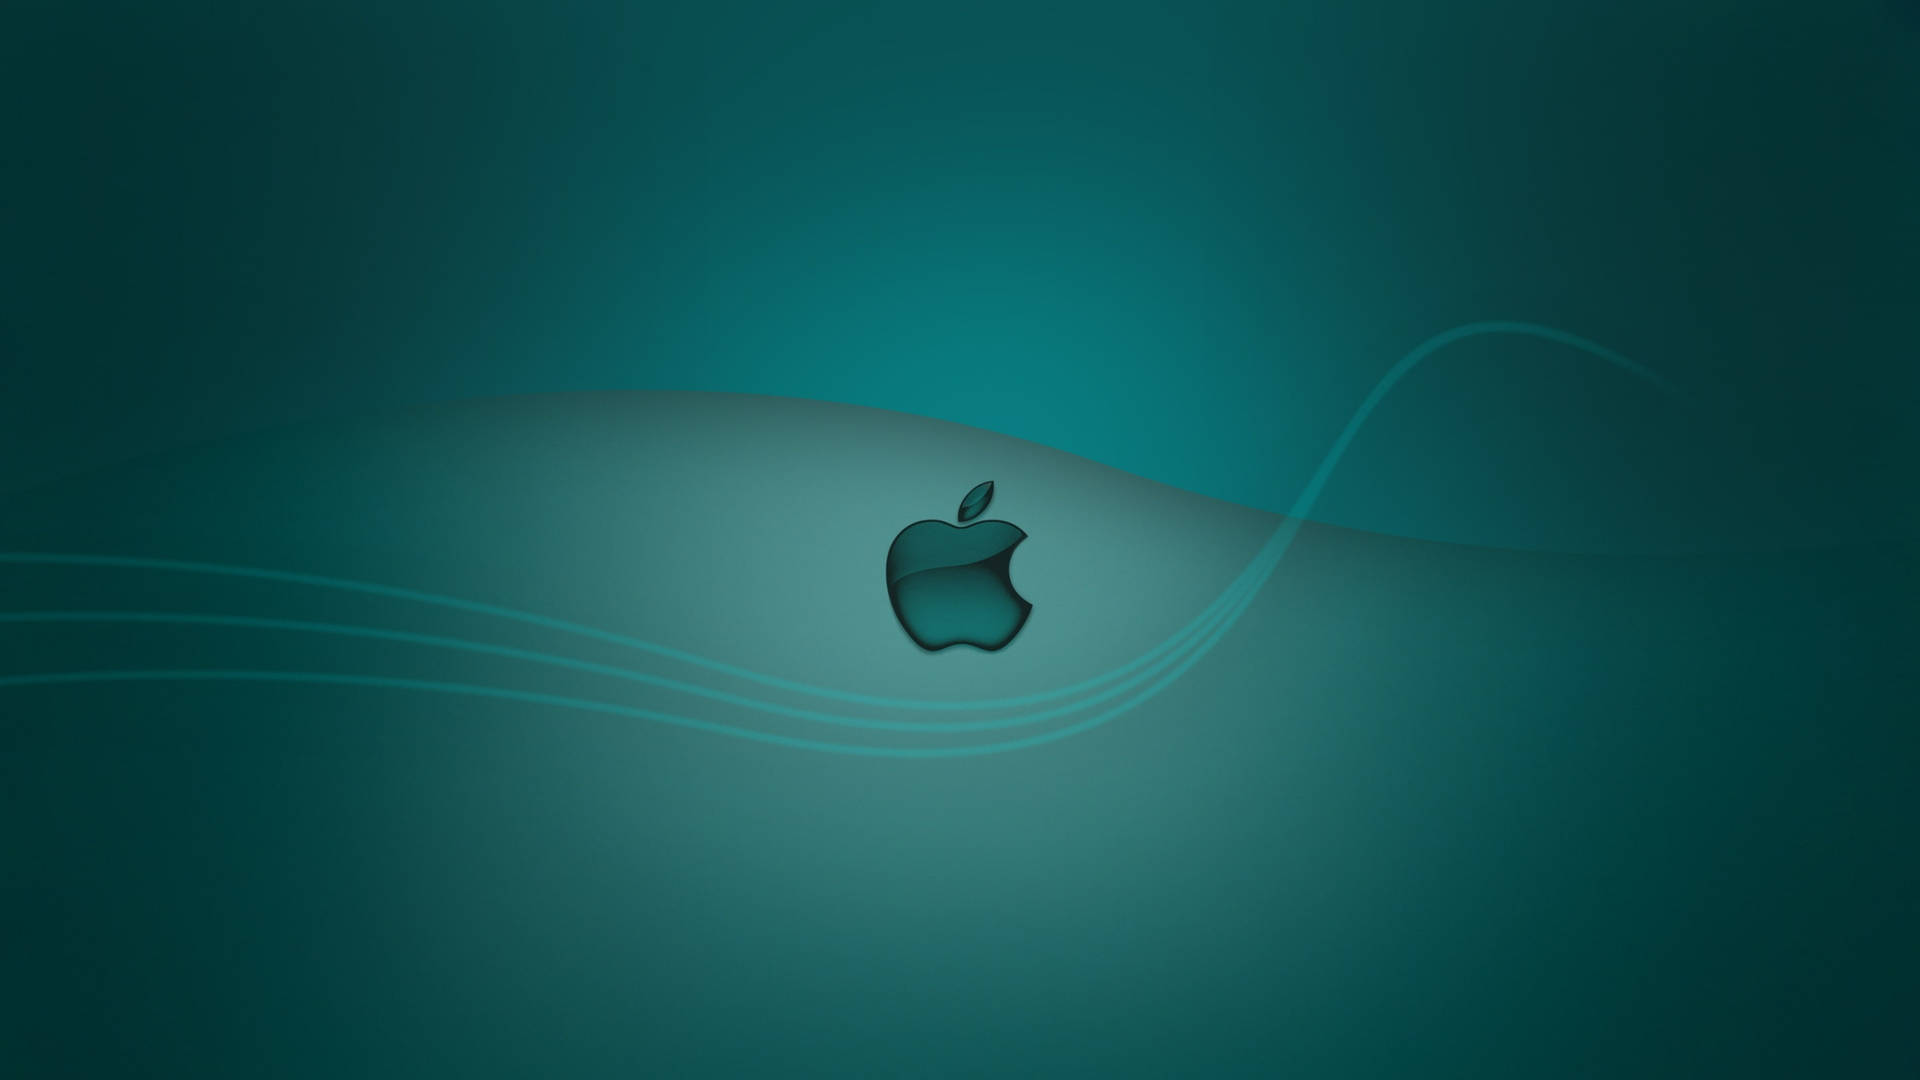 Turquoise Apple 4k Ultra Hd Wallpaper